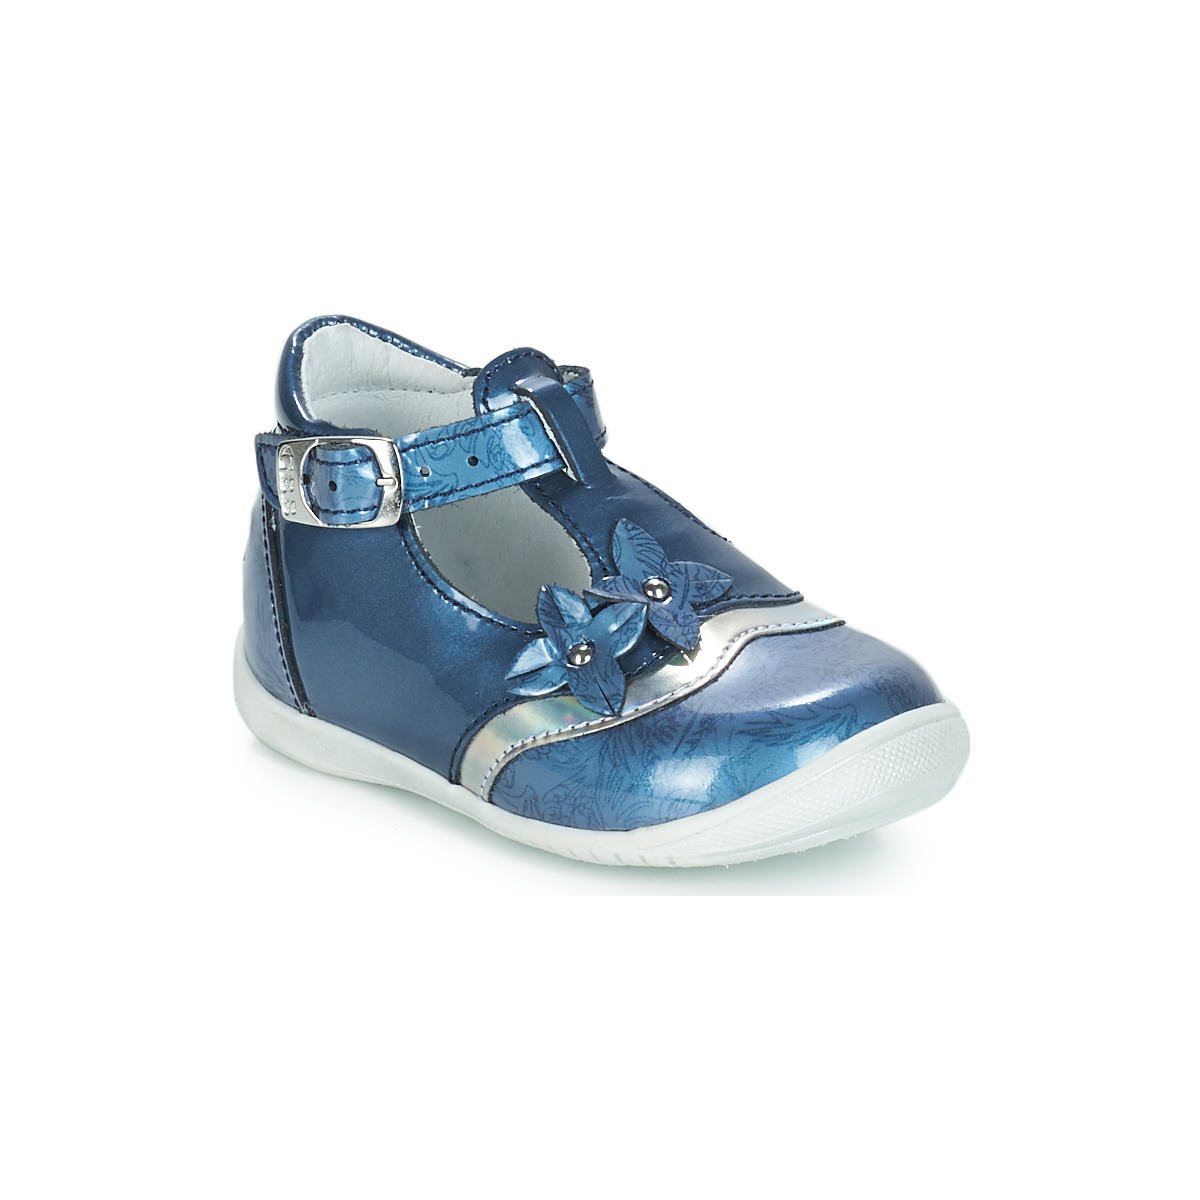 Chaussures Fille Ballerines / babies GBB SELVINA Bleu